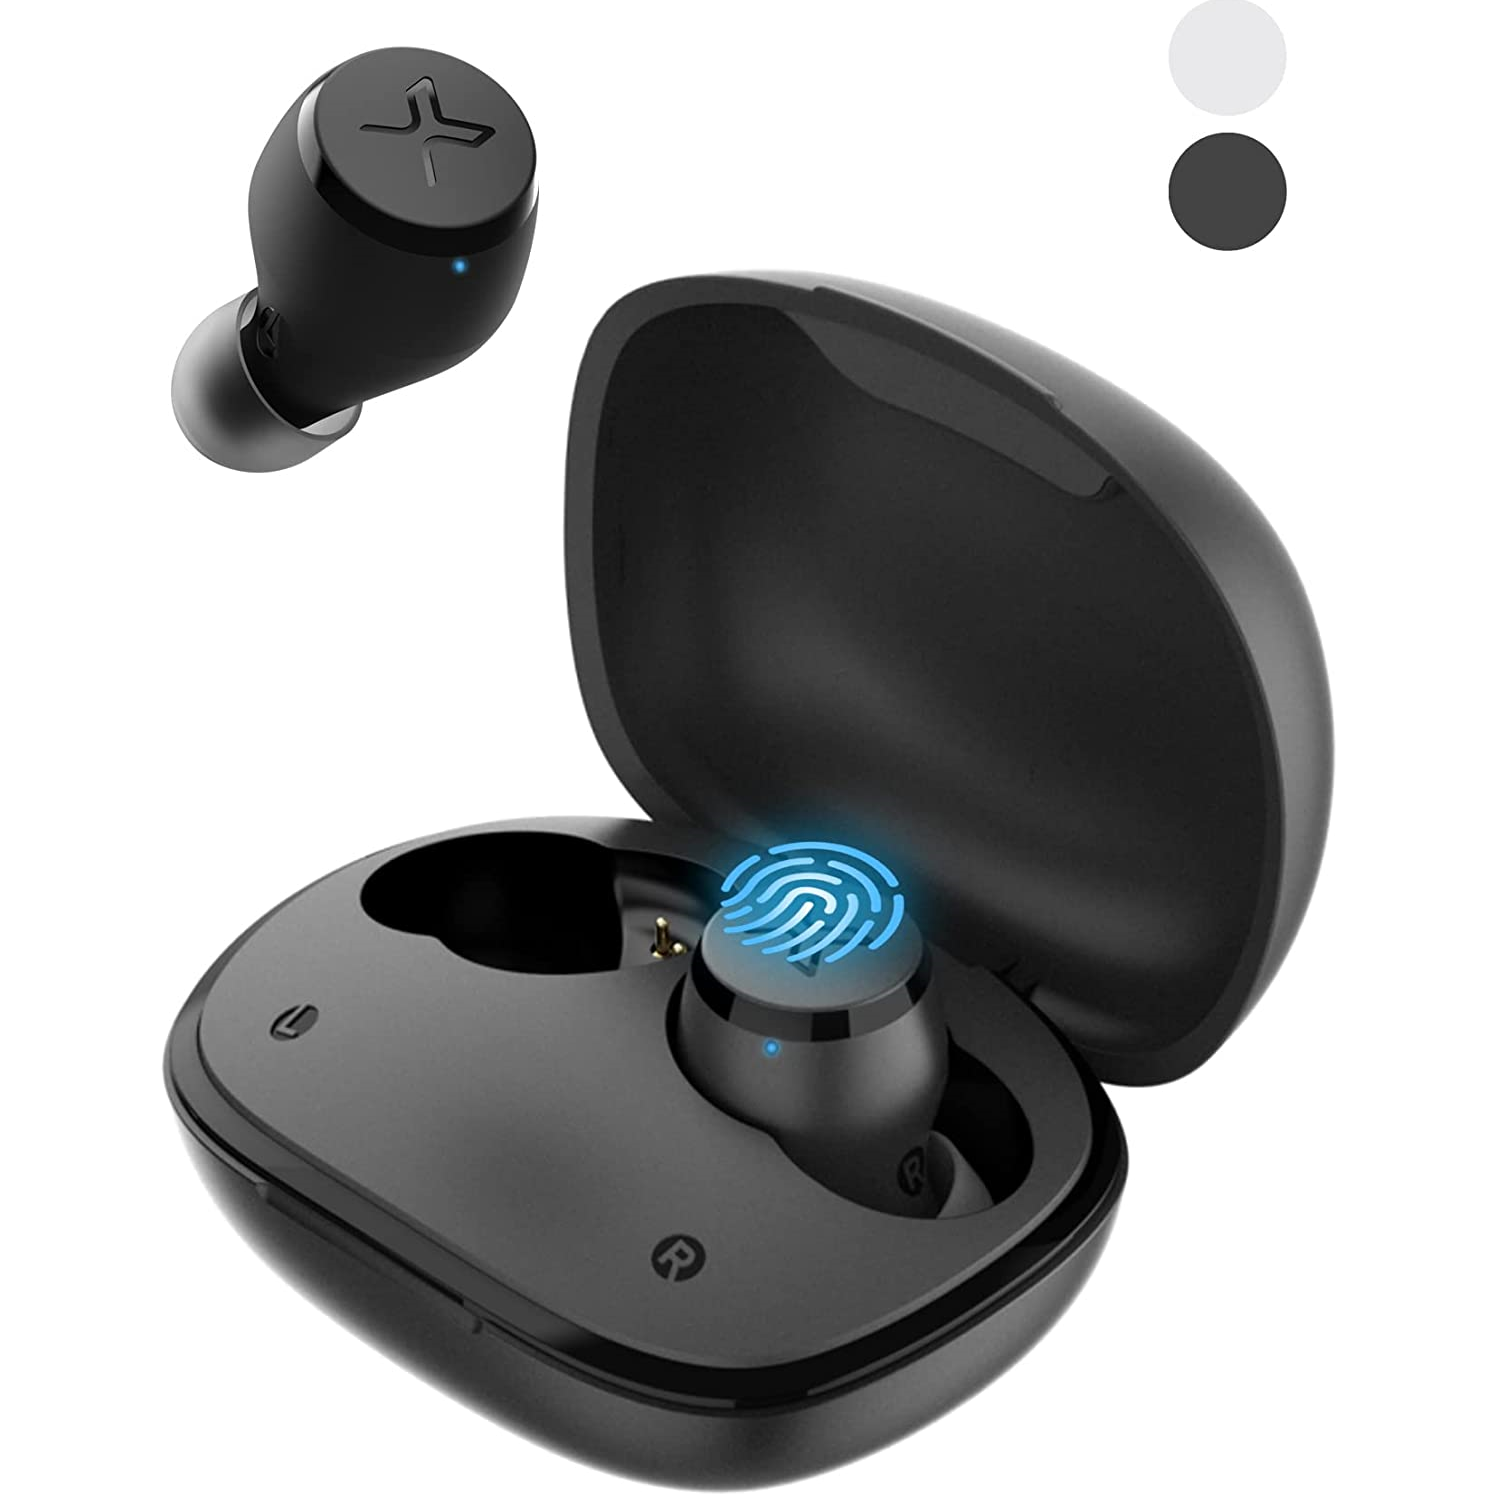 Edifier X3s True Wireless Stereo Earbuds - Black